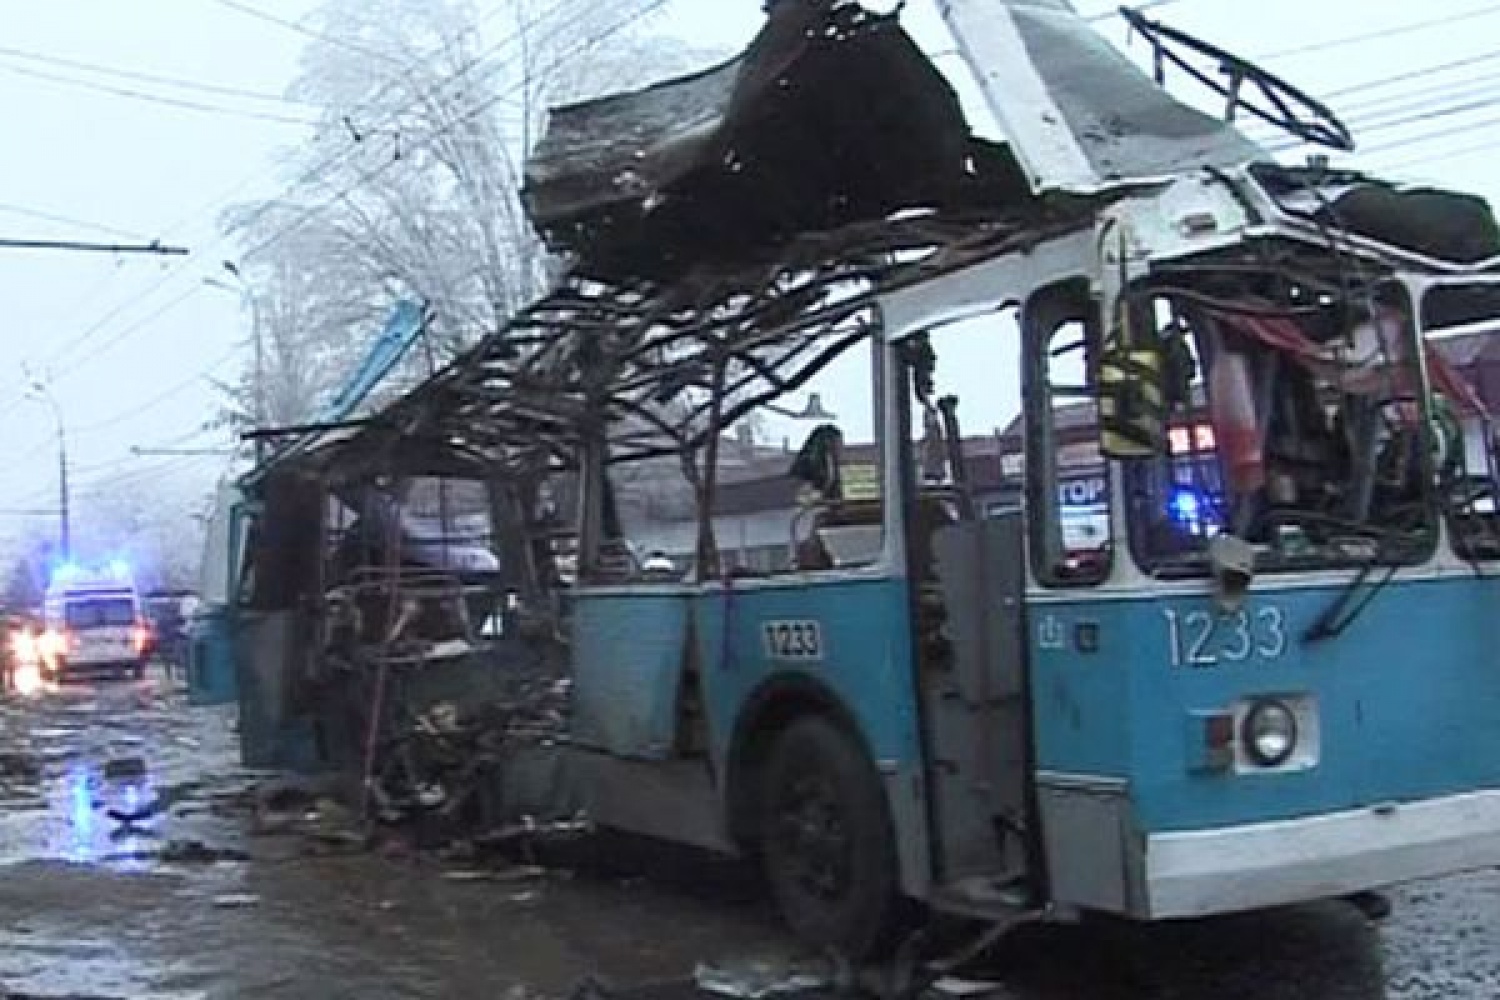 30 октября 2013 года. 30 Декабря 2013 год Волгоград взрыв троллейбуса. Взорванный троллейбус в Волгограде. Теракт 30 декабря в Волгограде. Взрыв троллейбуса в Волгограде.